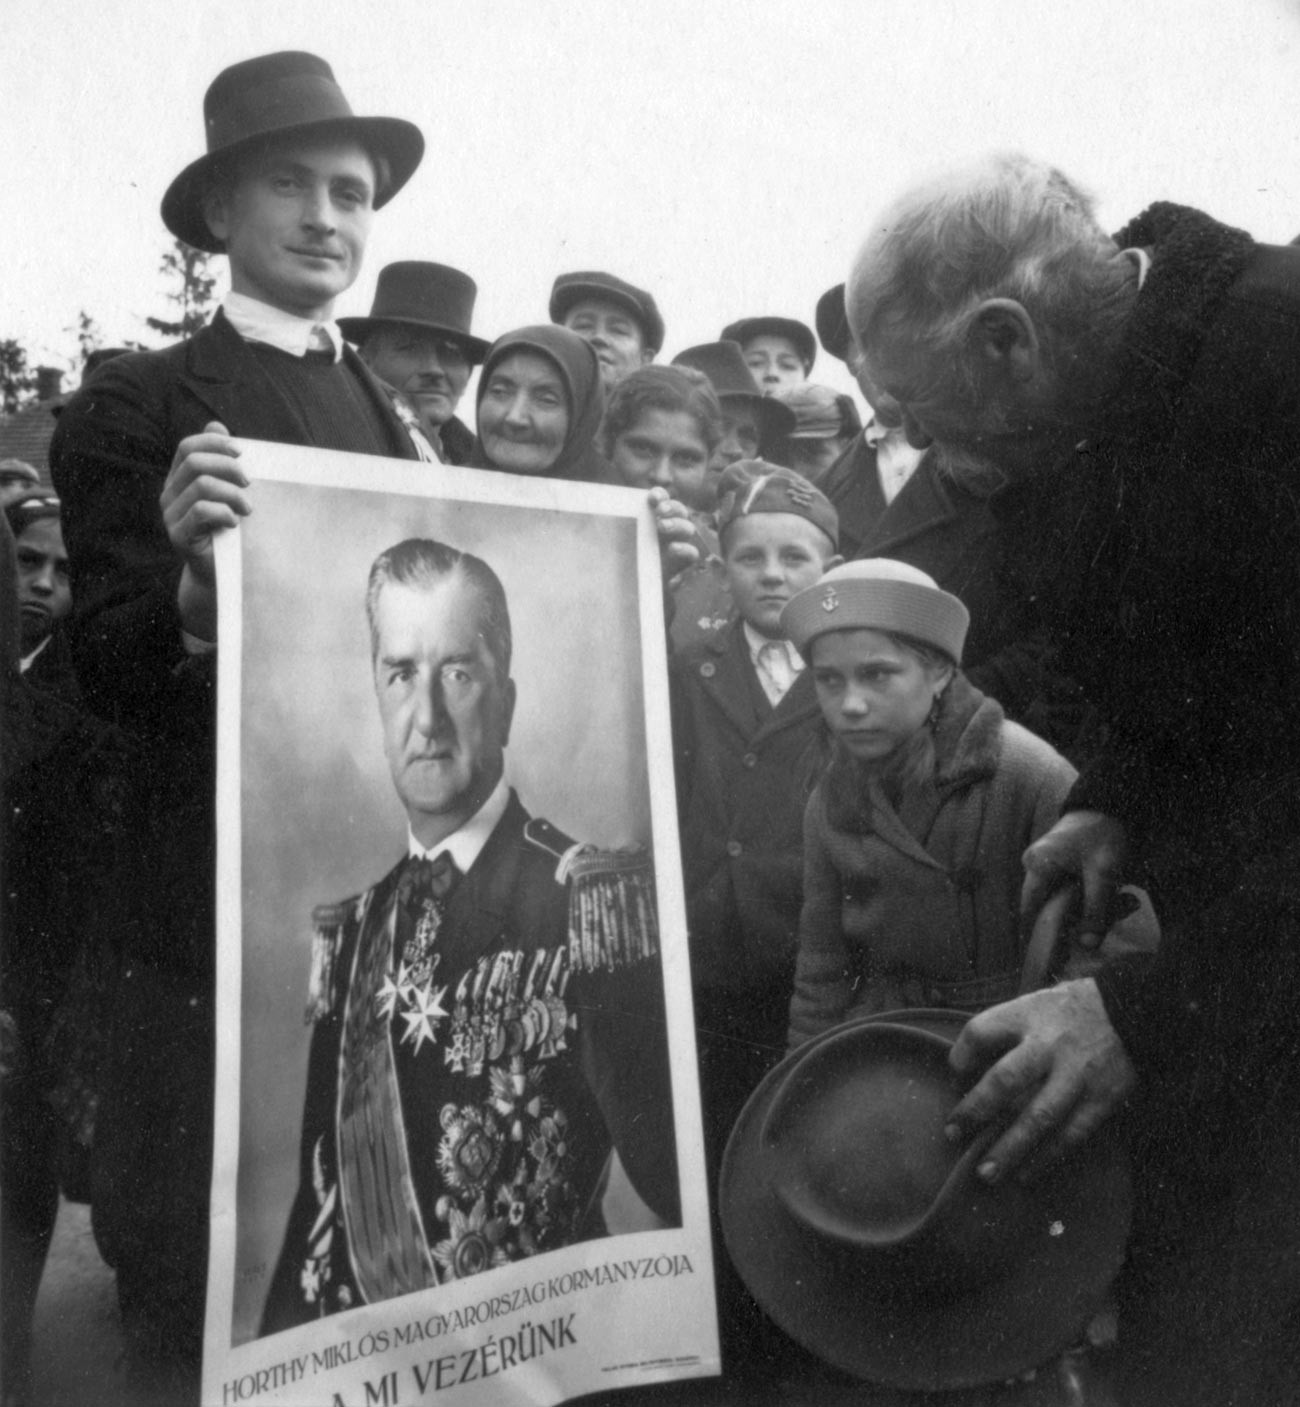 Une affiche avec le portrait de Miklós Horthy, militaire et homme d'État hongrois